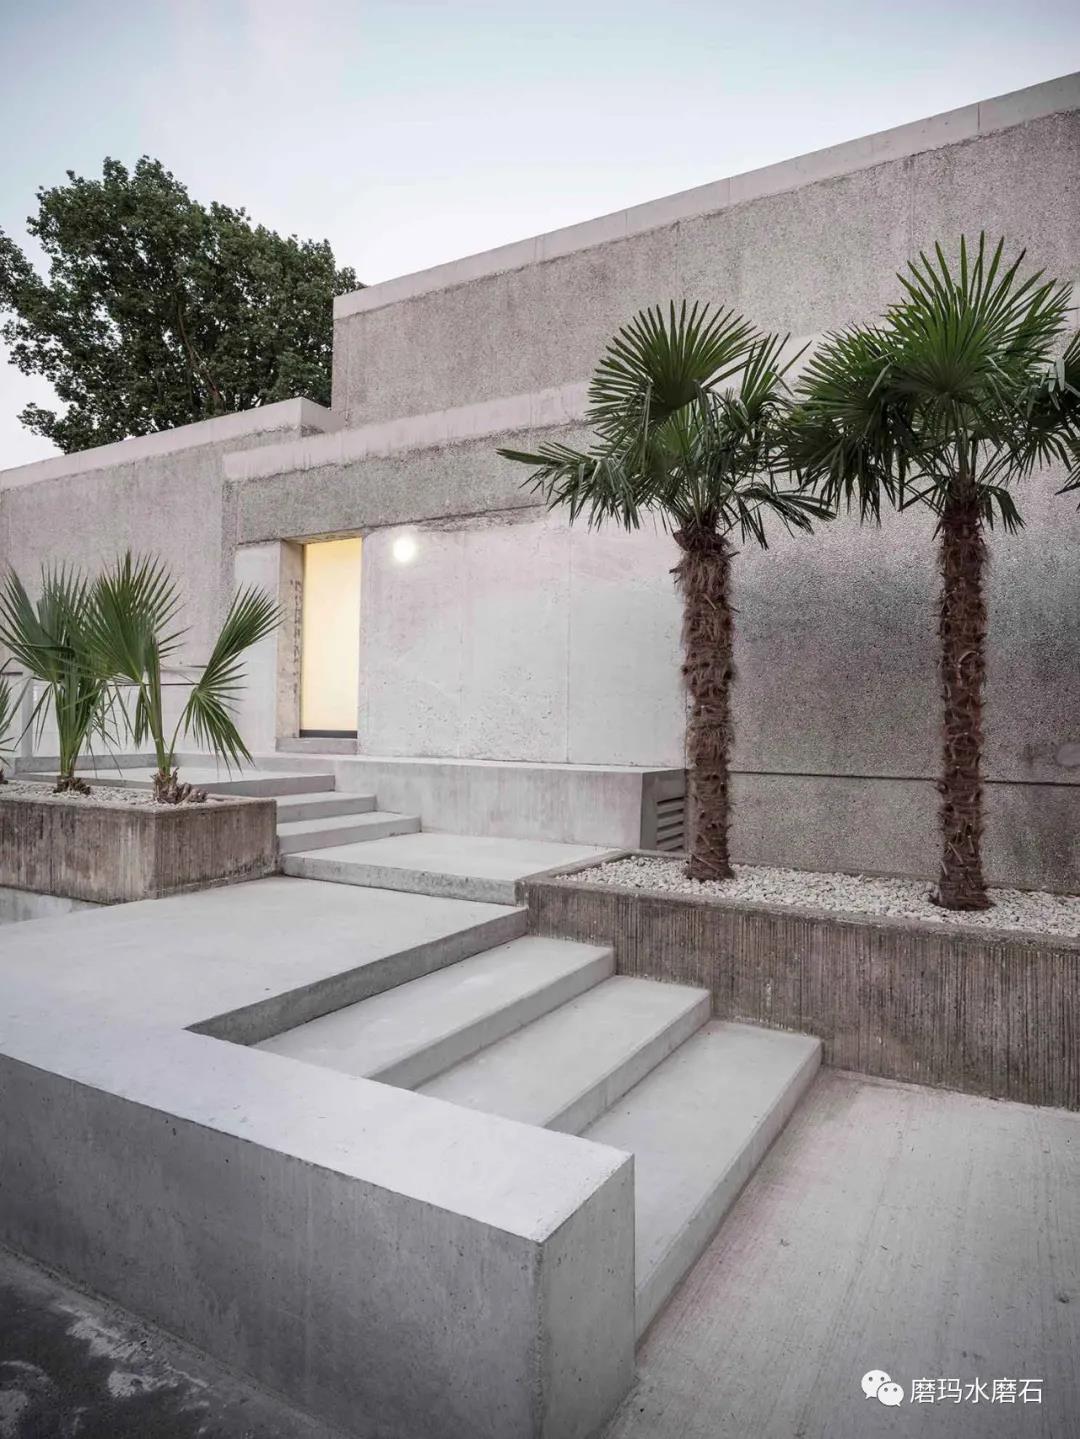 磨玛分享：德国设计师将水磨石和原始的粗野主义美学相结合打造大自然住宅